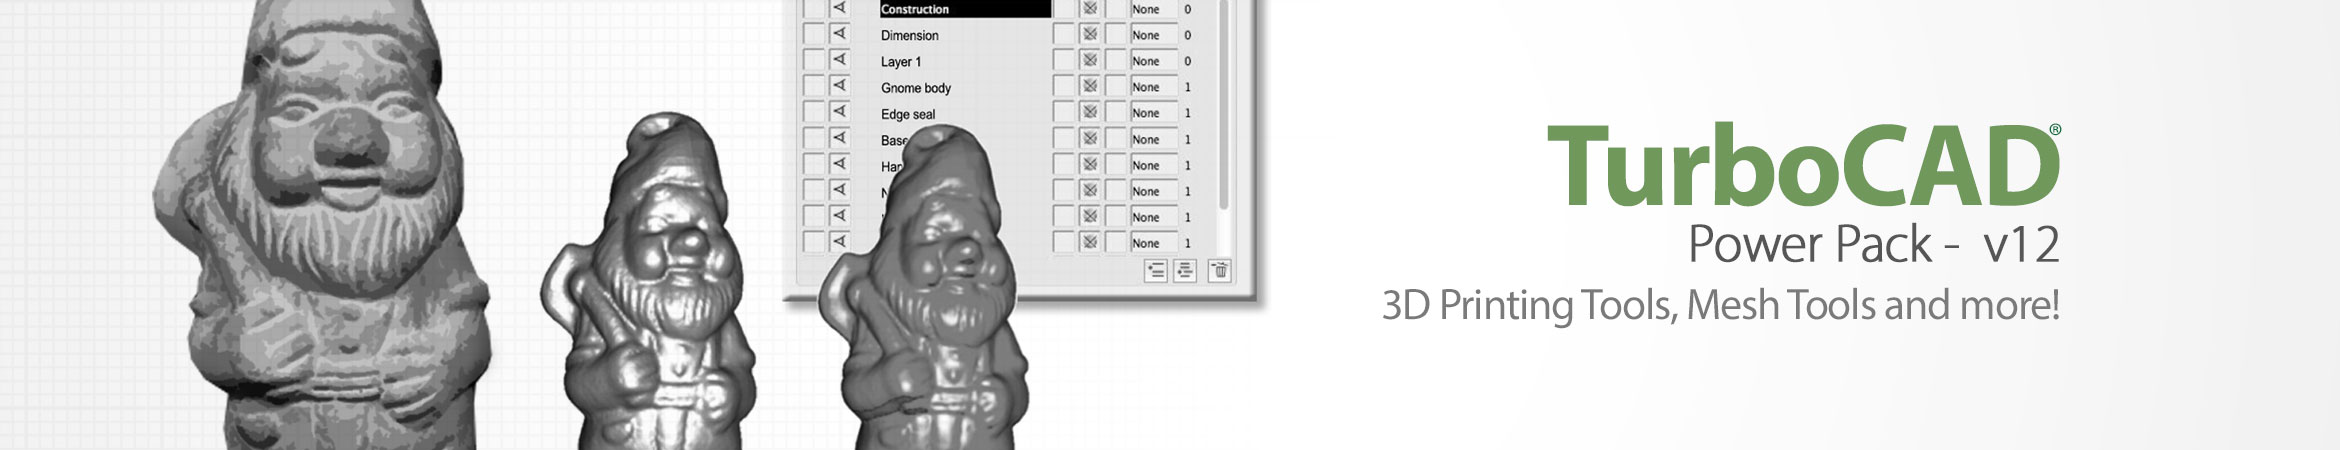 TurboCAD Mac Designer 2D - All-Purpose 2D CAD Software for Mac